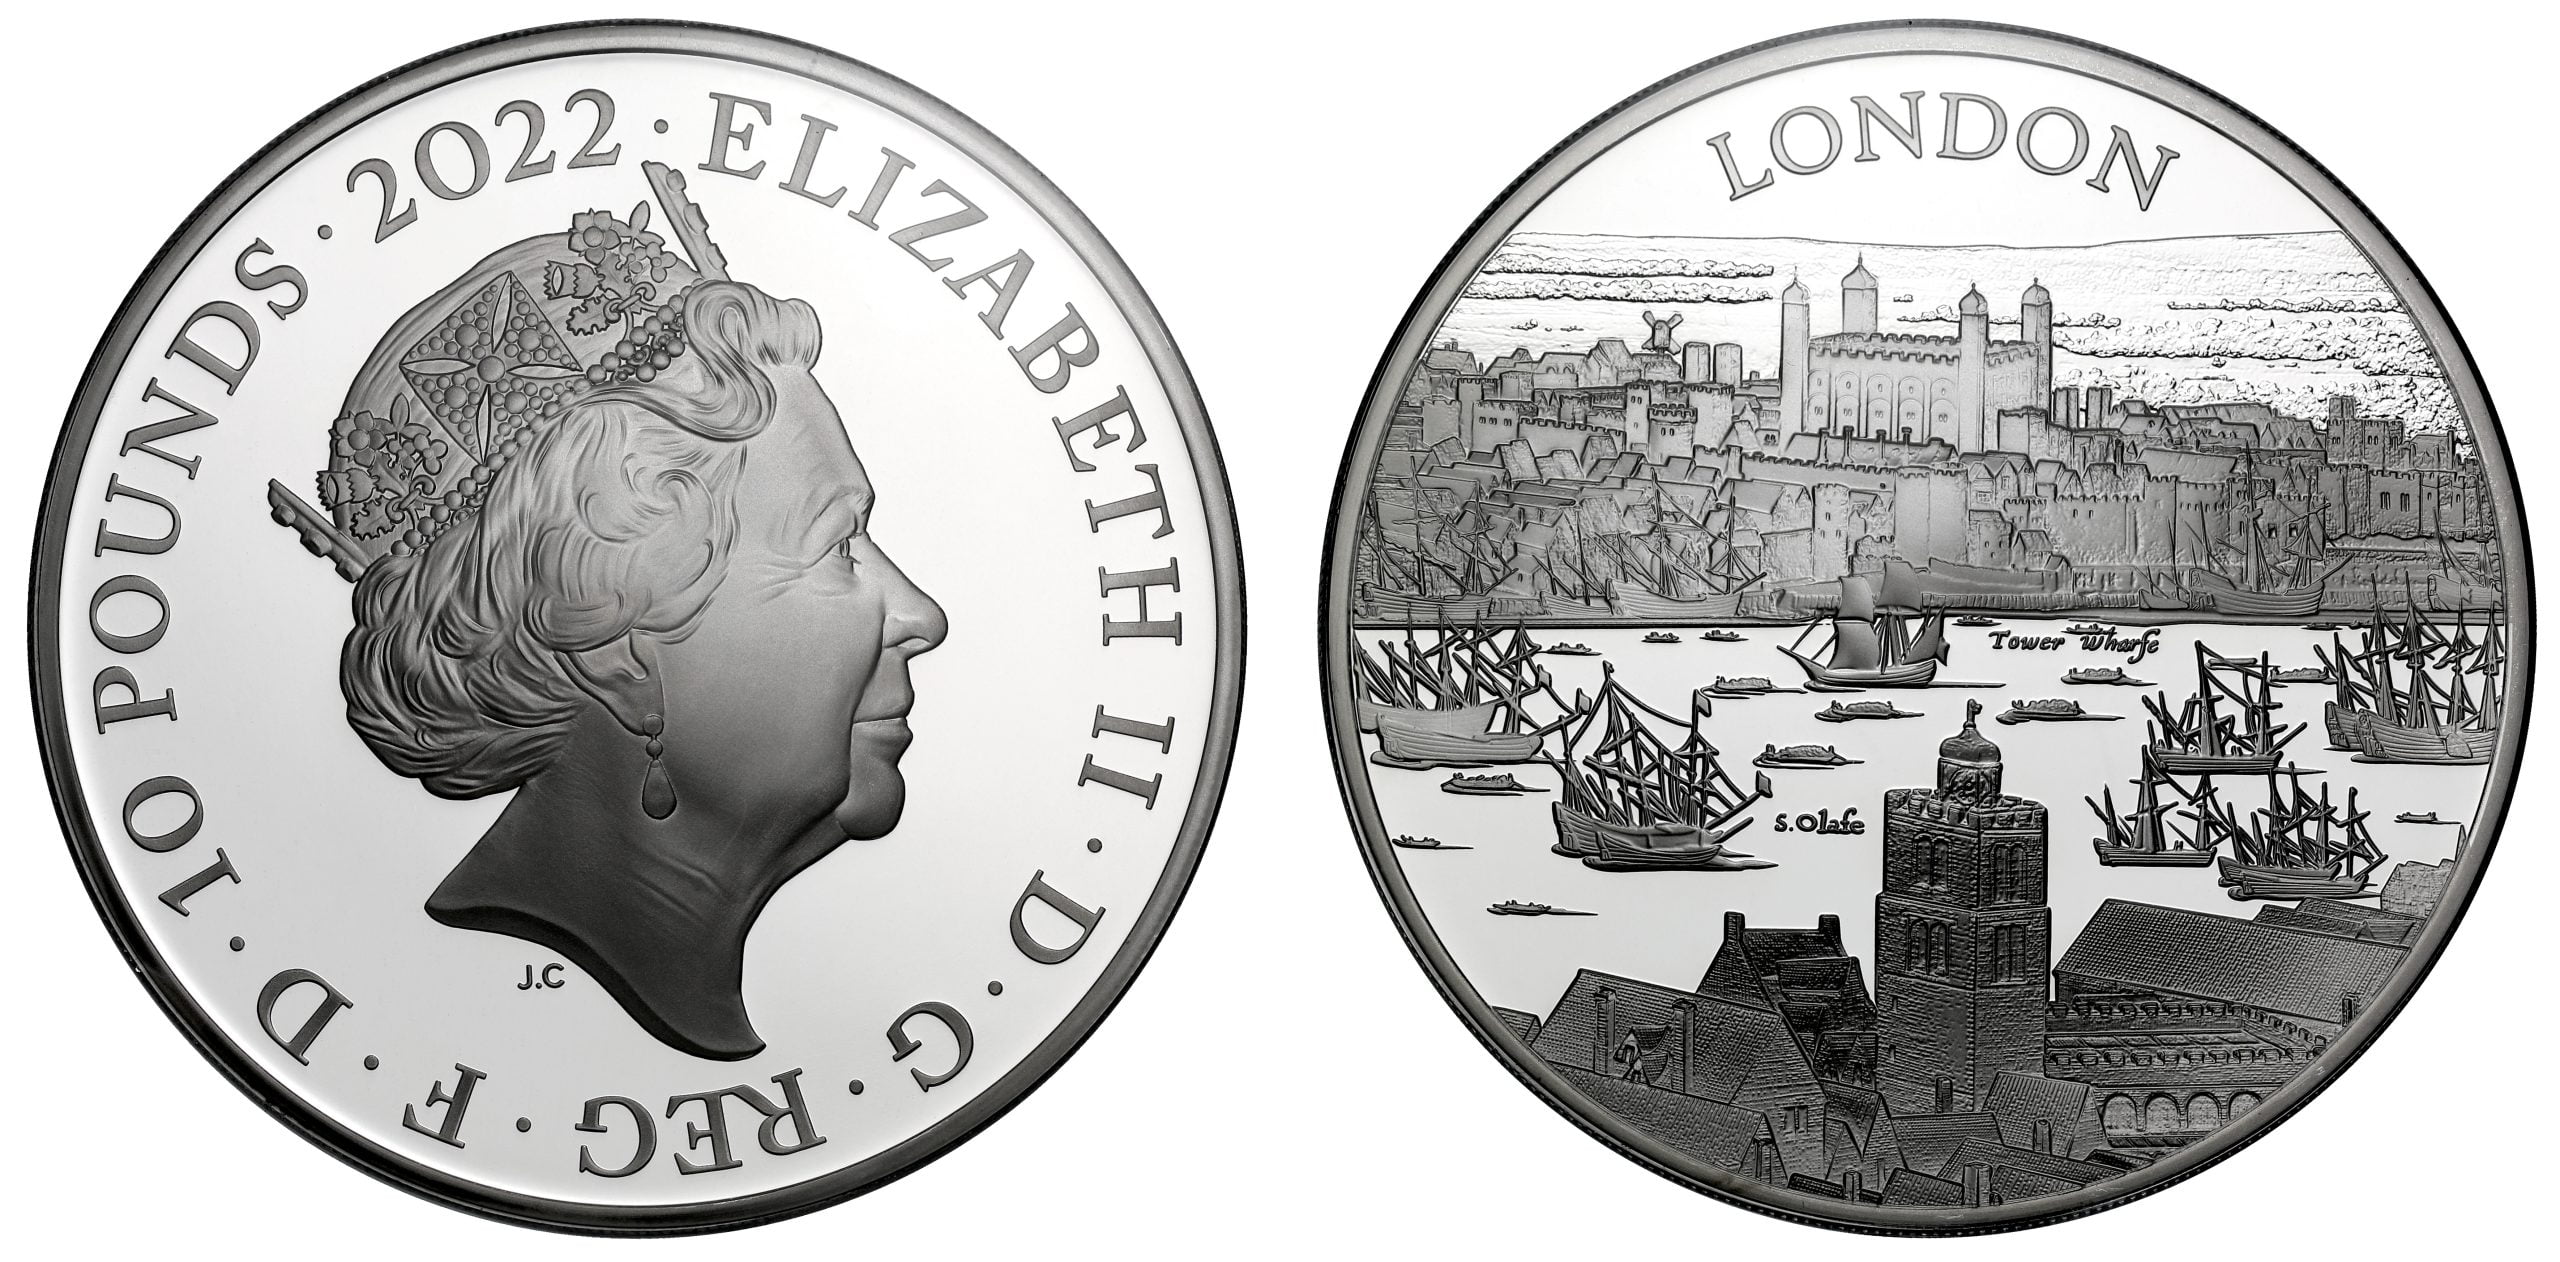 10 Silver Pounds Elizabeth II (London)